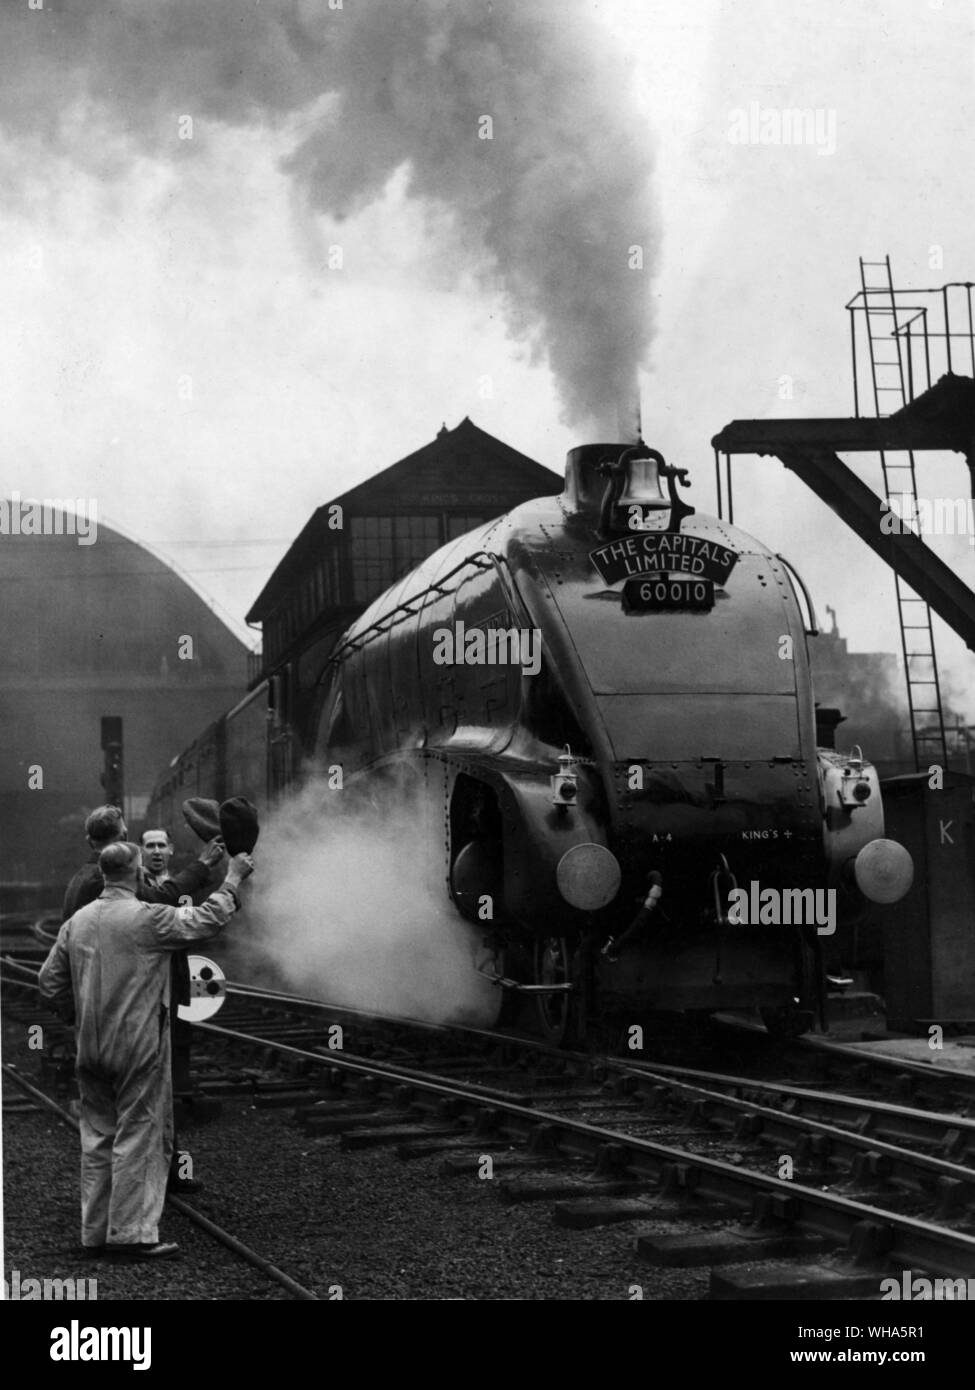 Las capitales limitados. Londres a Edimburgo non stop express. Los trabajadores en Kings Cross adiós mientras el tren sale de la estación en su discurso inaugural. 23 de mayo de 1949 Foto de stock